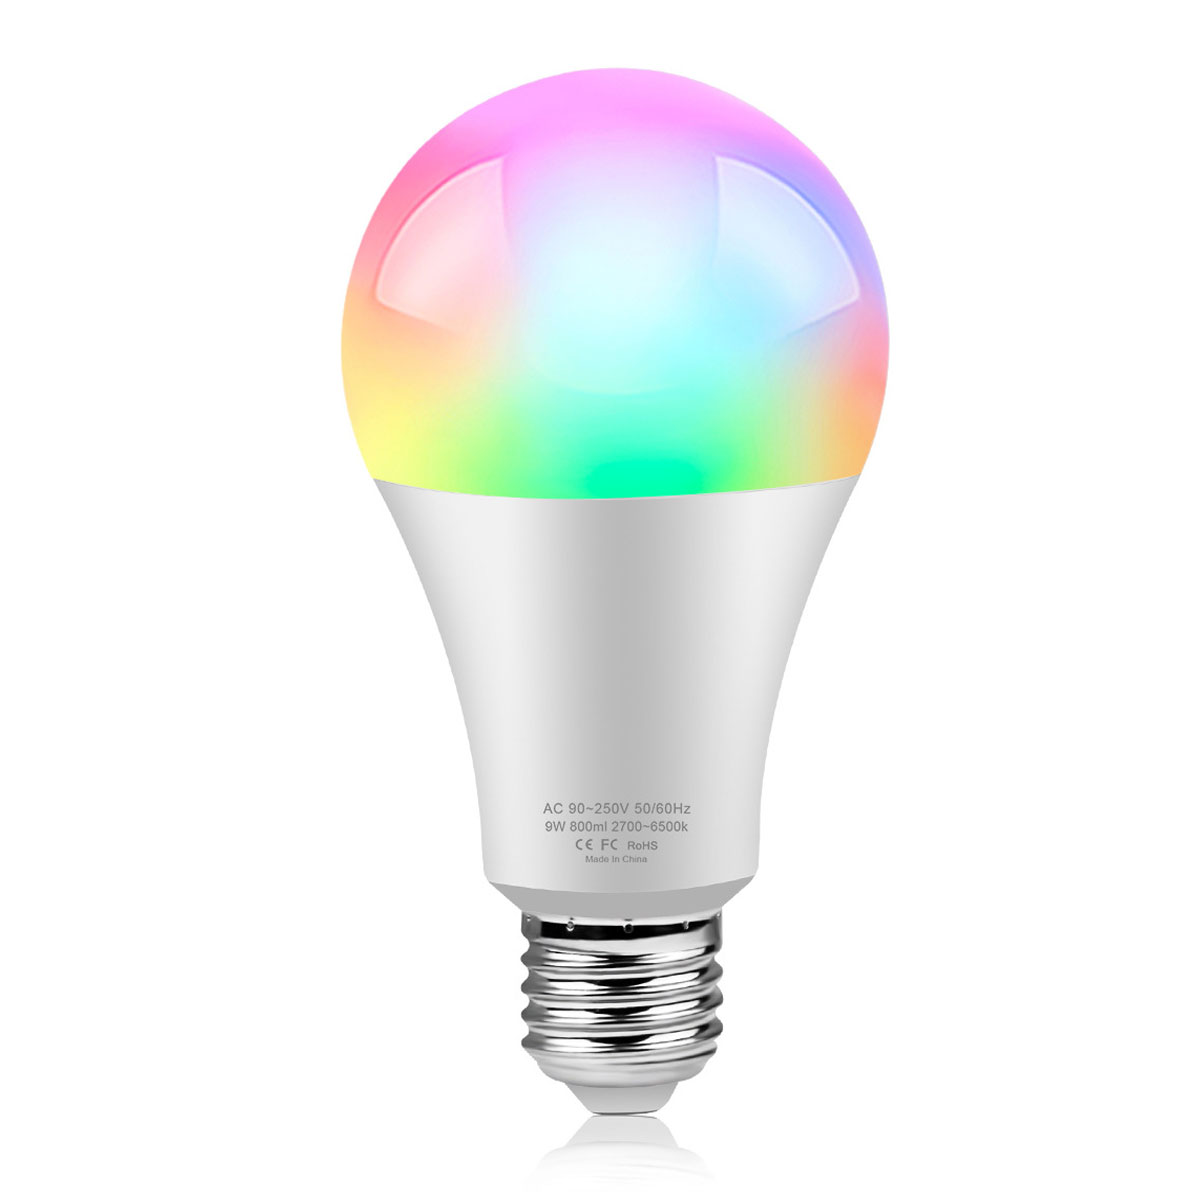 Smarte 18W Glühbirne PROSCENIC CW WLAN E27 RGB,